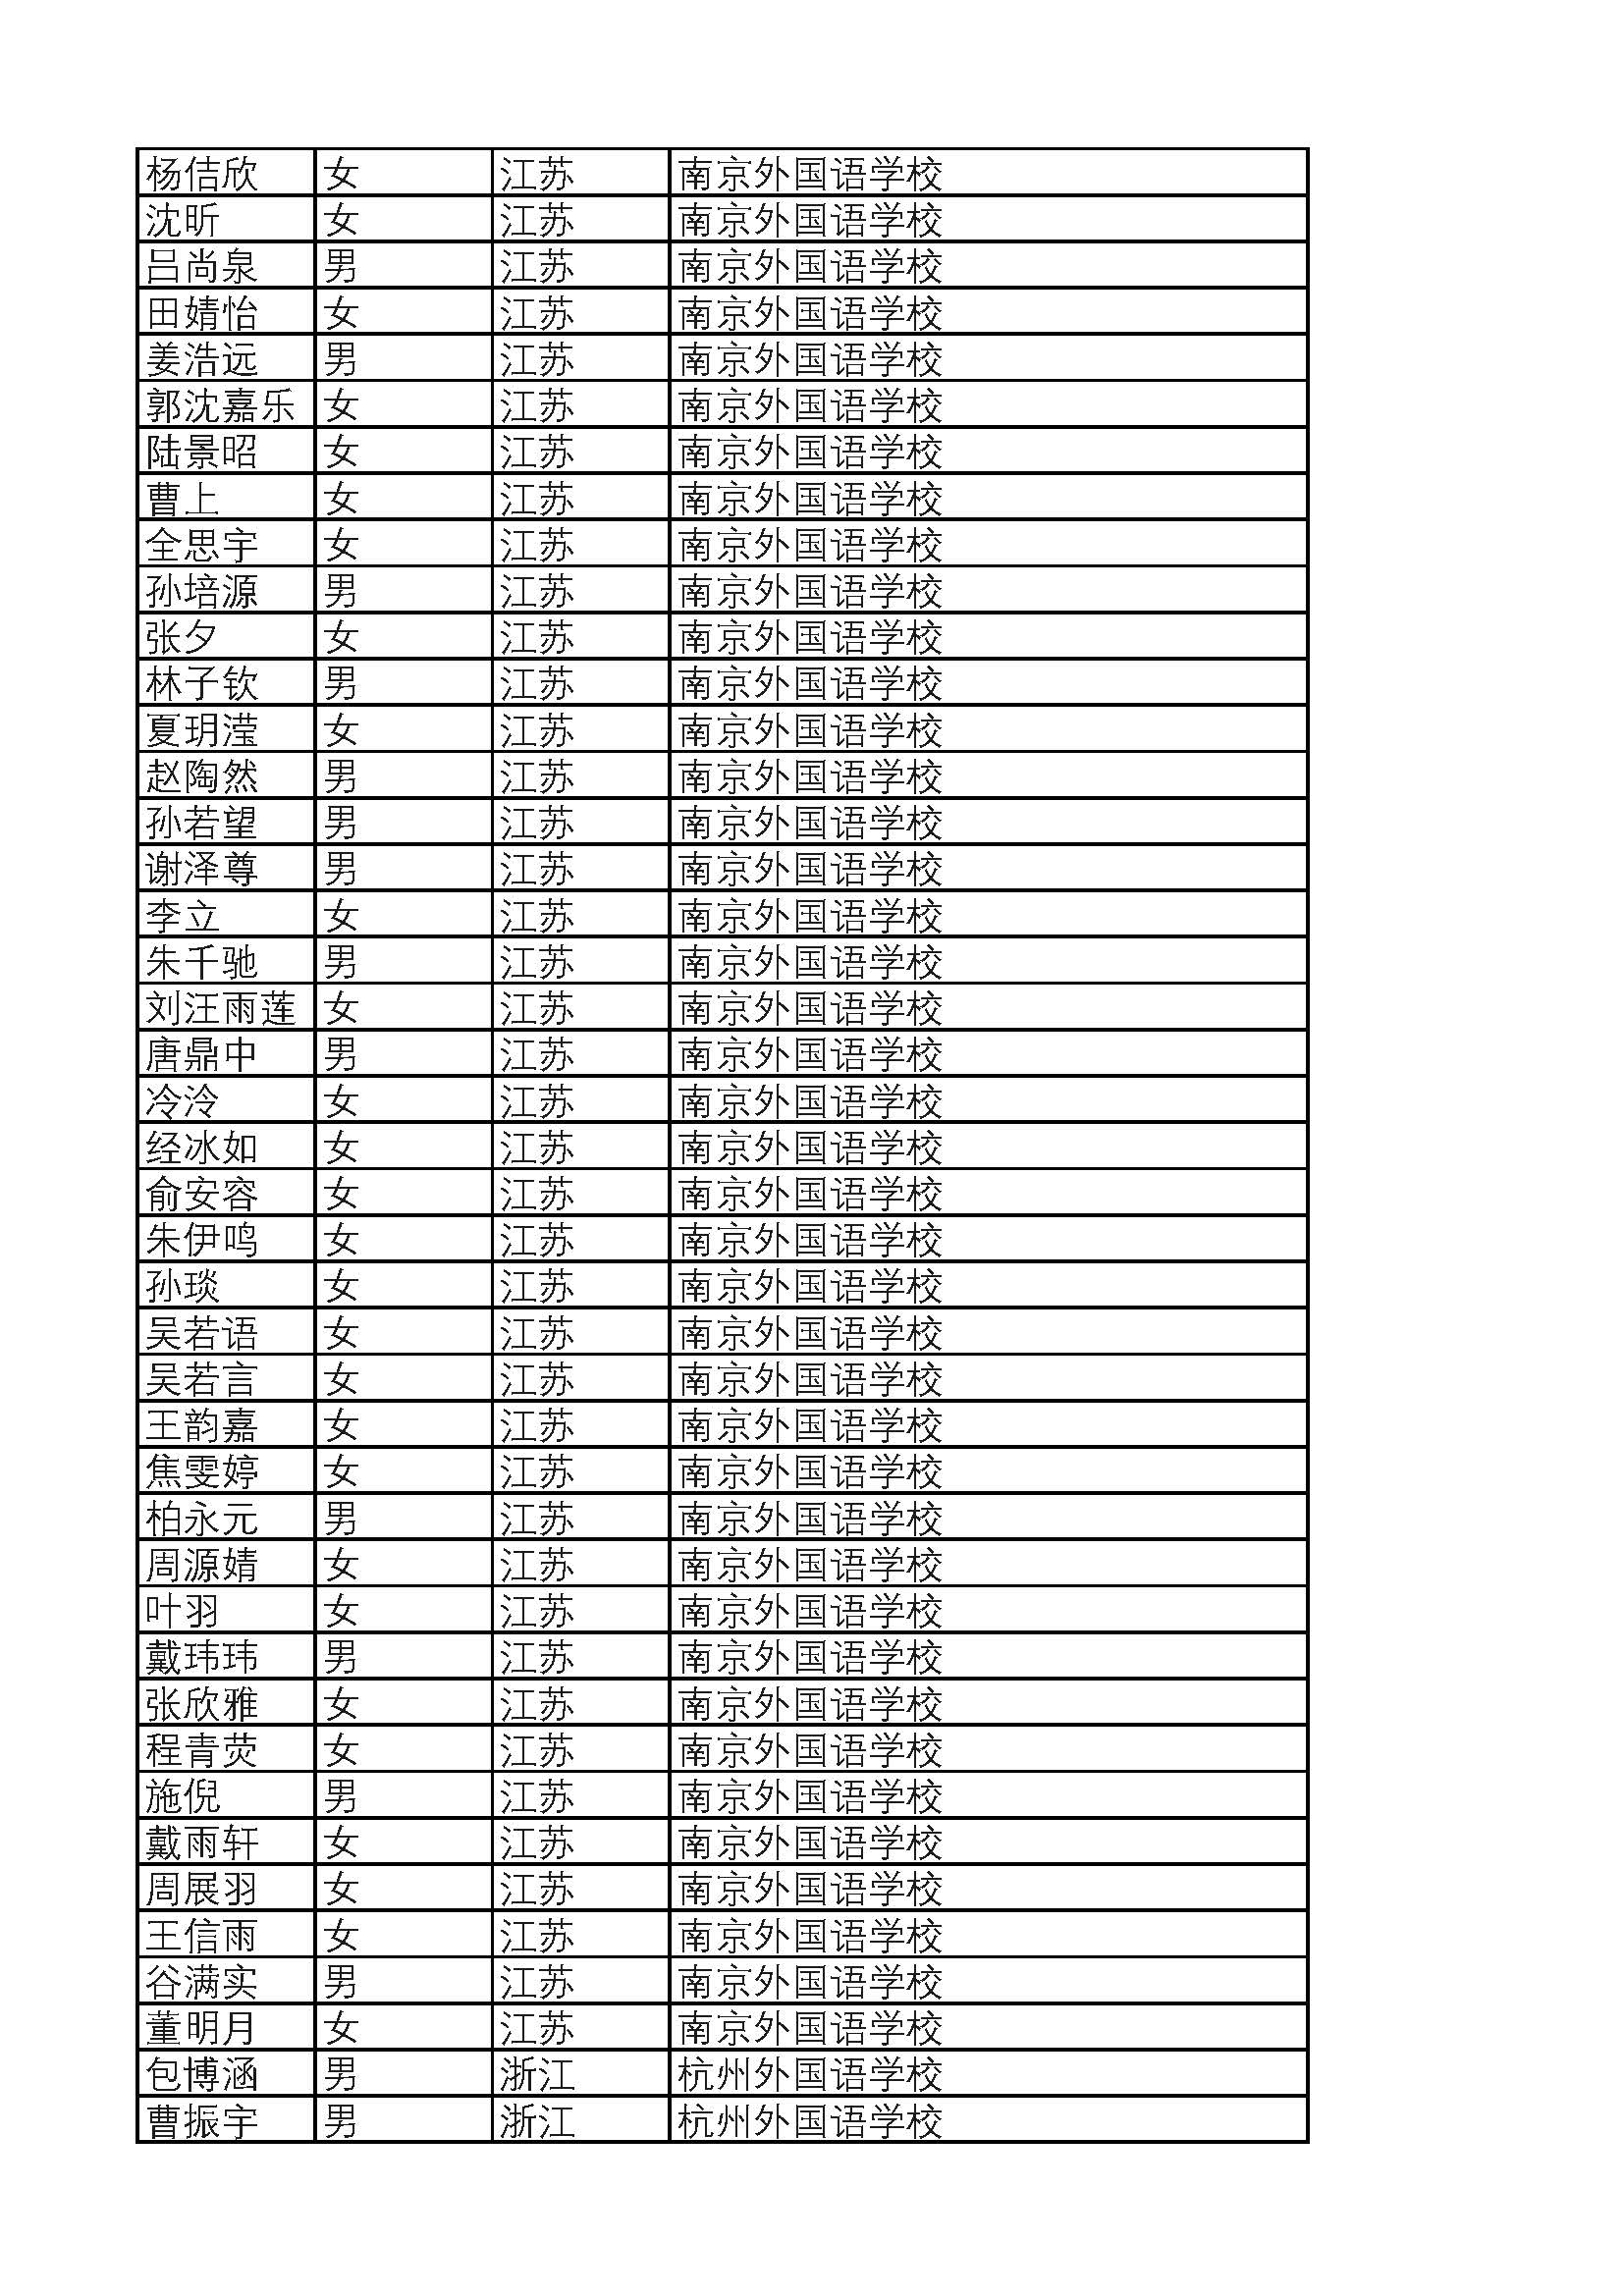 2019年普通高考保送生资格名单(教育部公示) 2